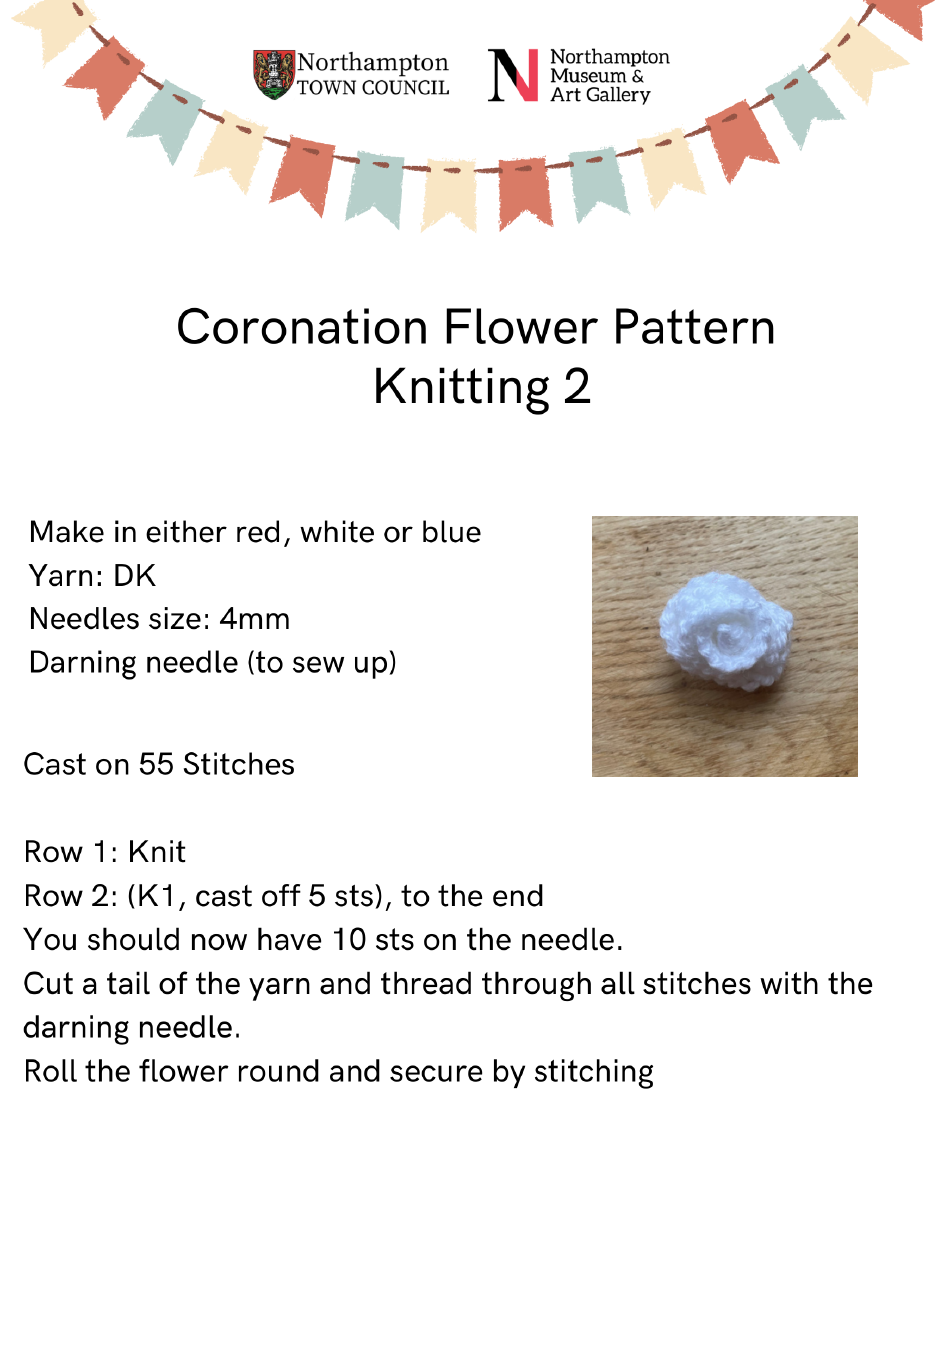 Coronation Flower Knitting Pattern - 2, Page 1